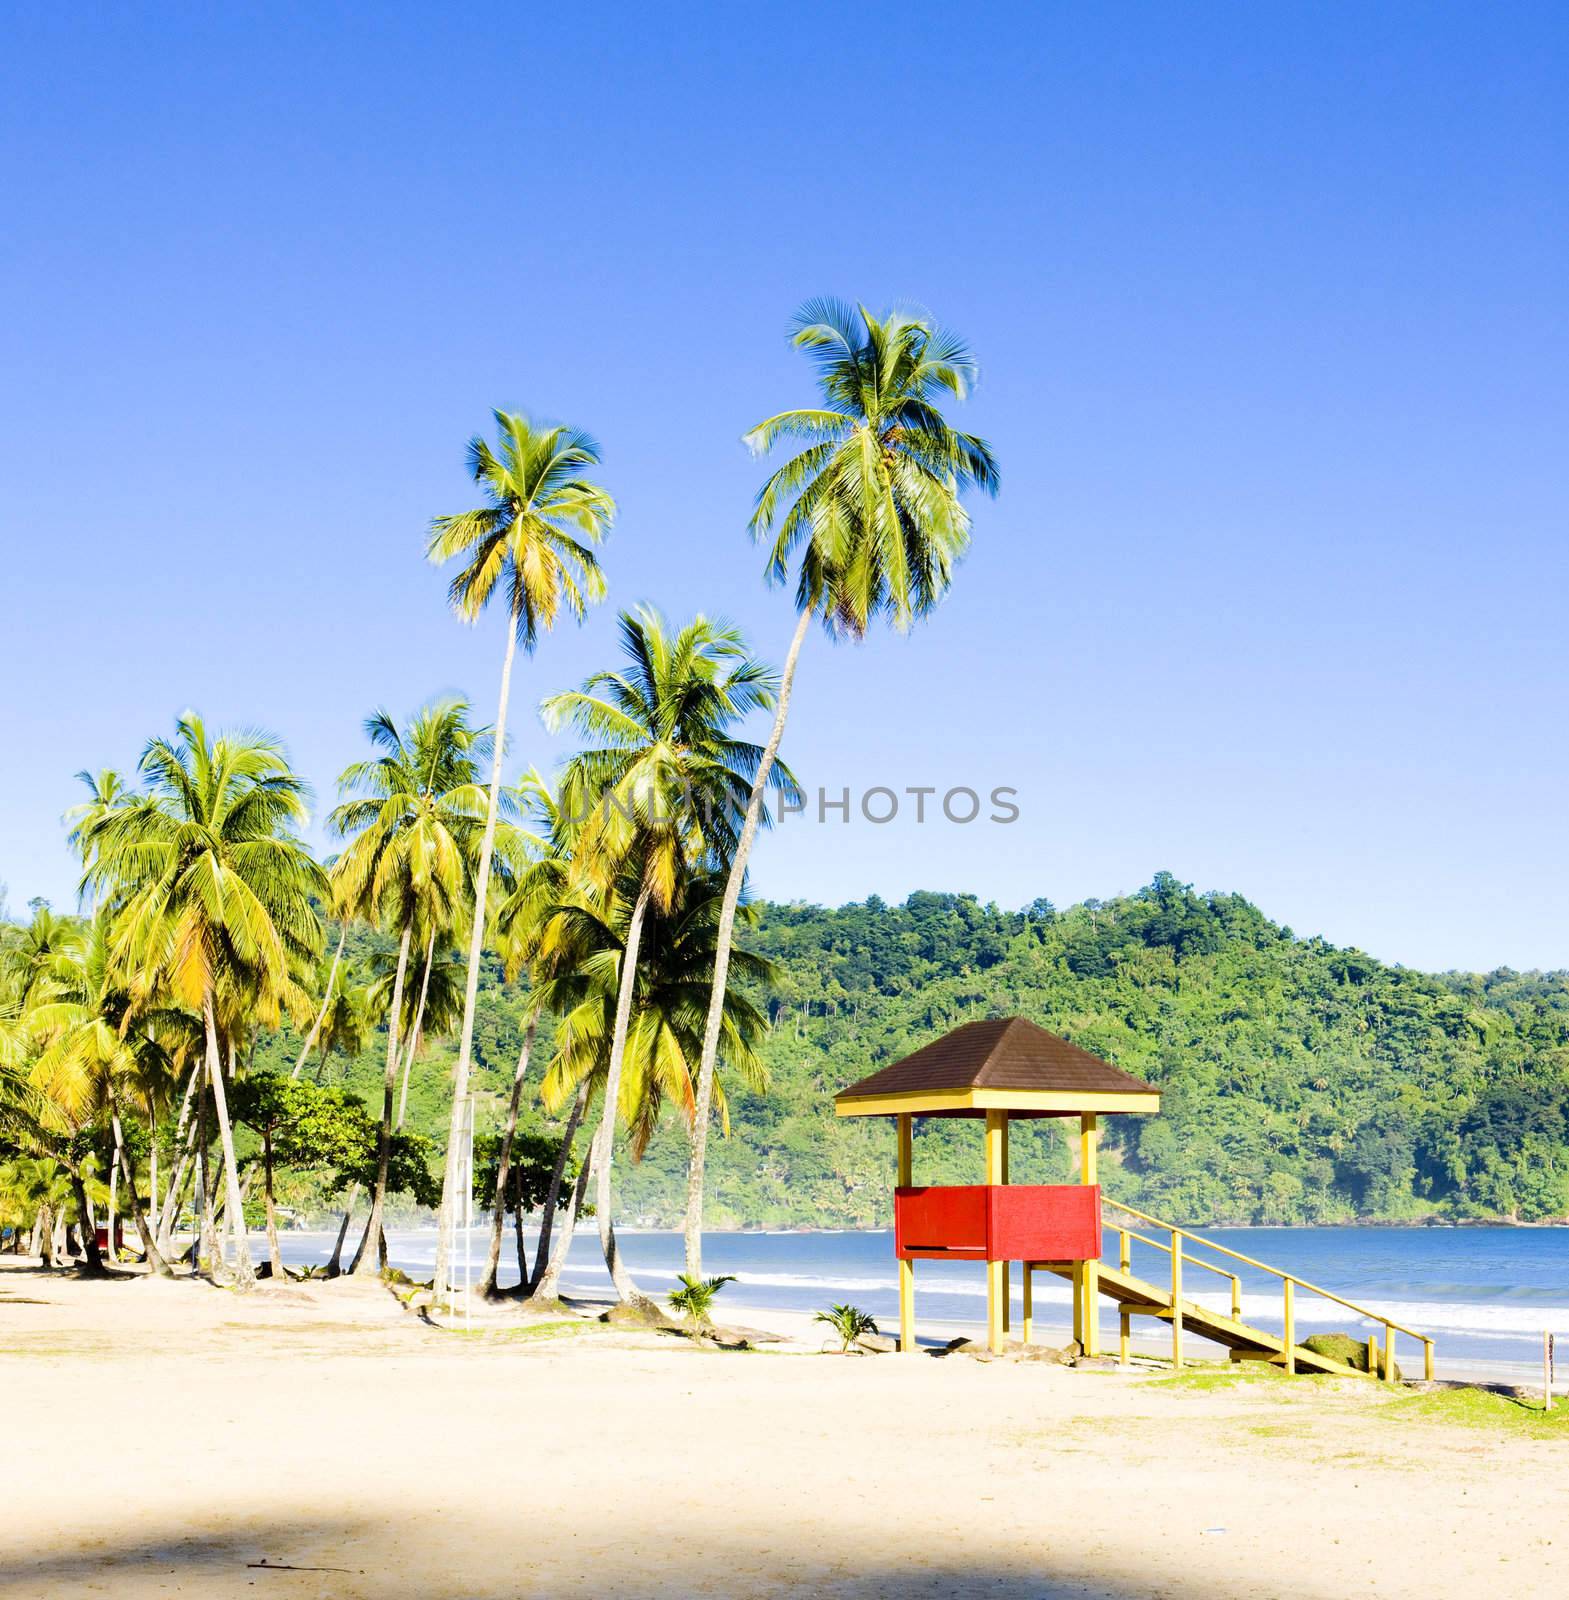 cabin on the beach, Maracas Bay, Trinidad by phbcz